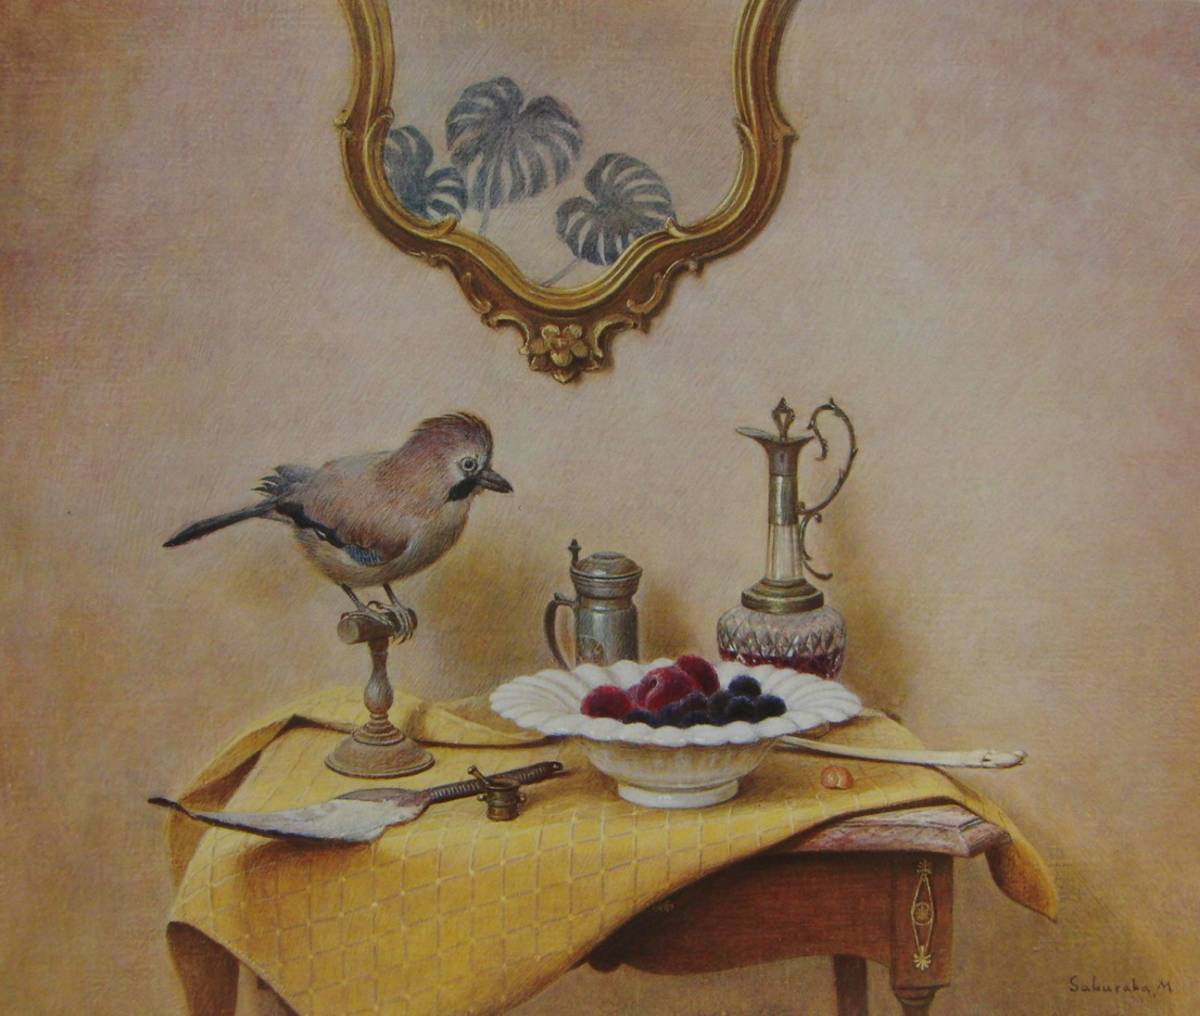 Yu Sakuraba, oiseau et fruit, Livres d'art rares/peintures encadrées, Cadre neuf de haute qualité avec cadre, Bonne condition, livraison gratuite, peinture, peinture à l'huile, Nature, Peinture de paysage